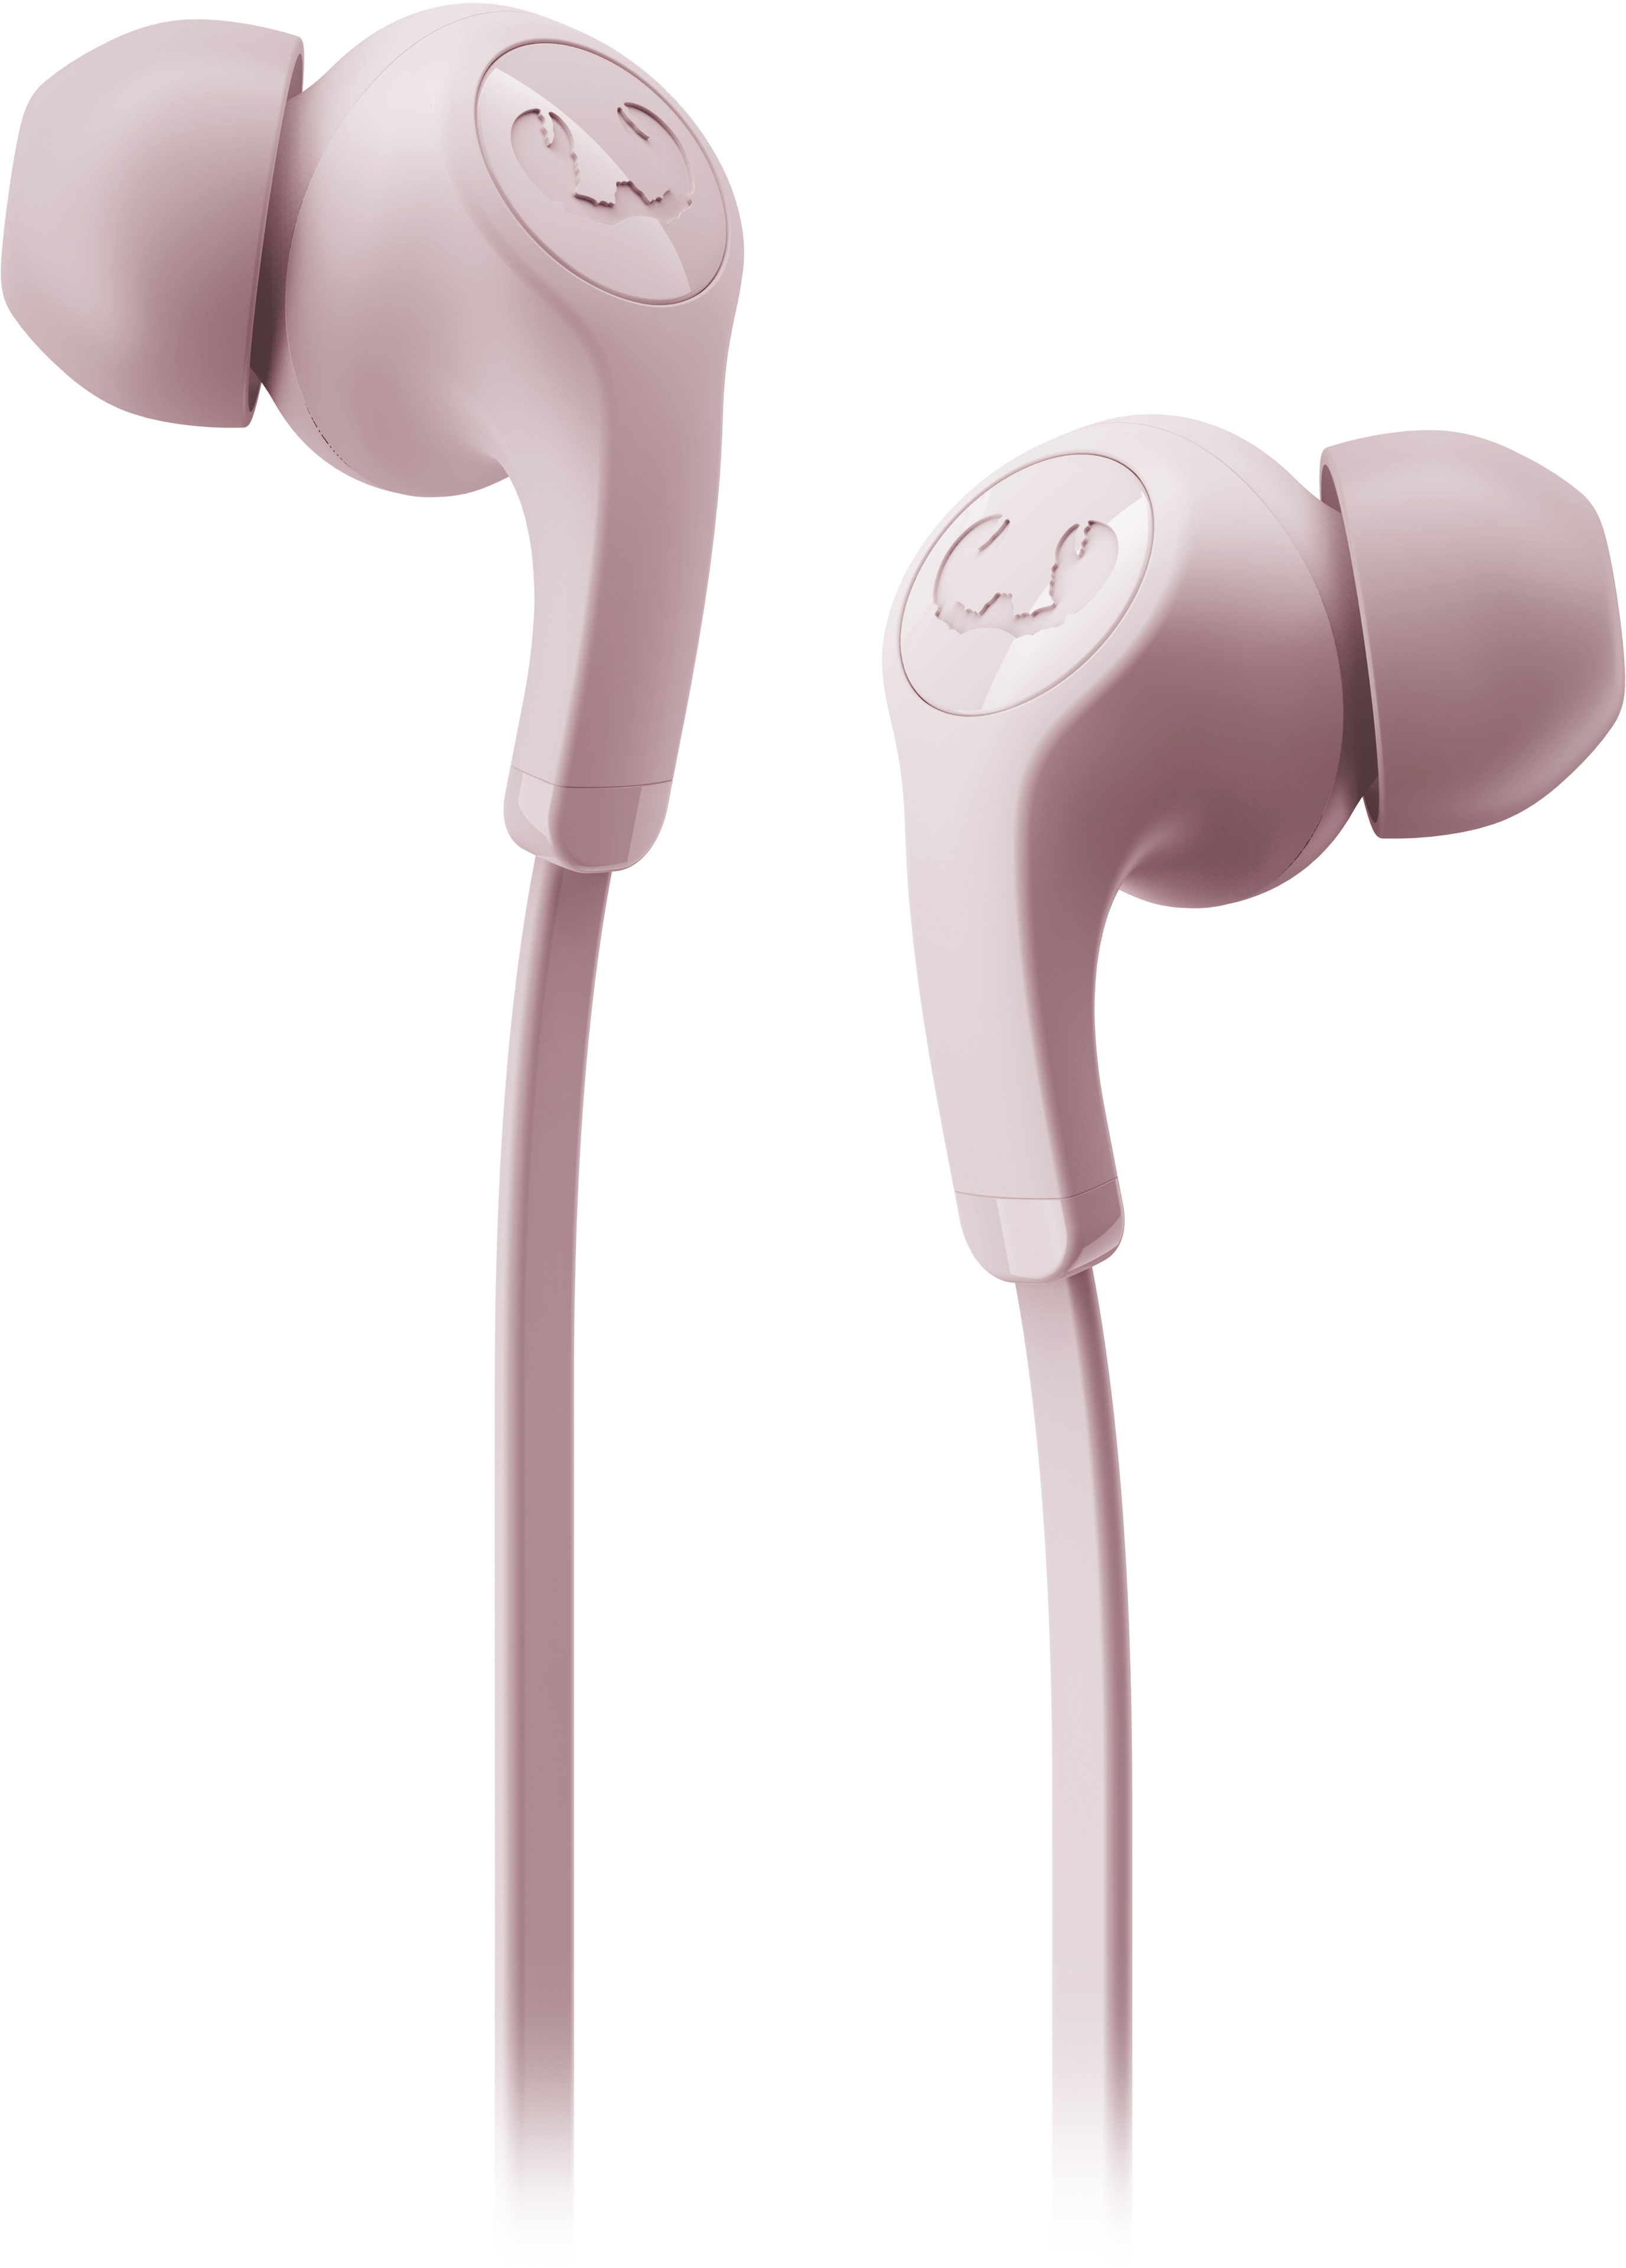 FRESH'N REBEL Flow Tip In-ear Headphones 3EP1100SP Smokey Pink